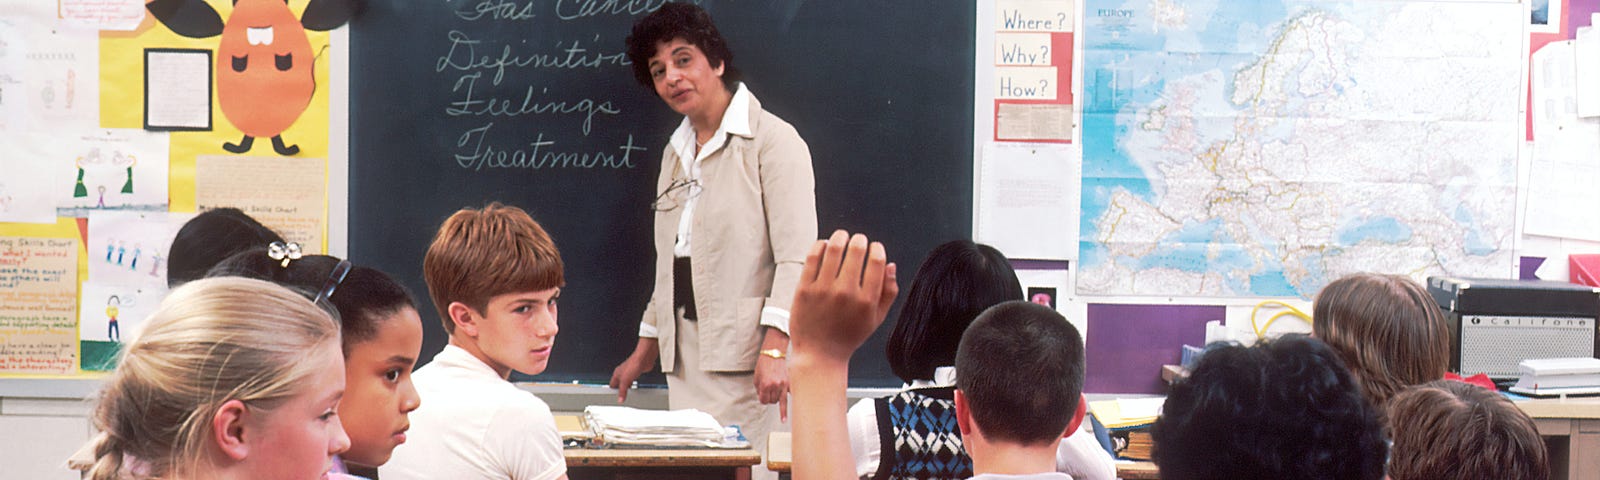 A teacher instructing a class